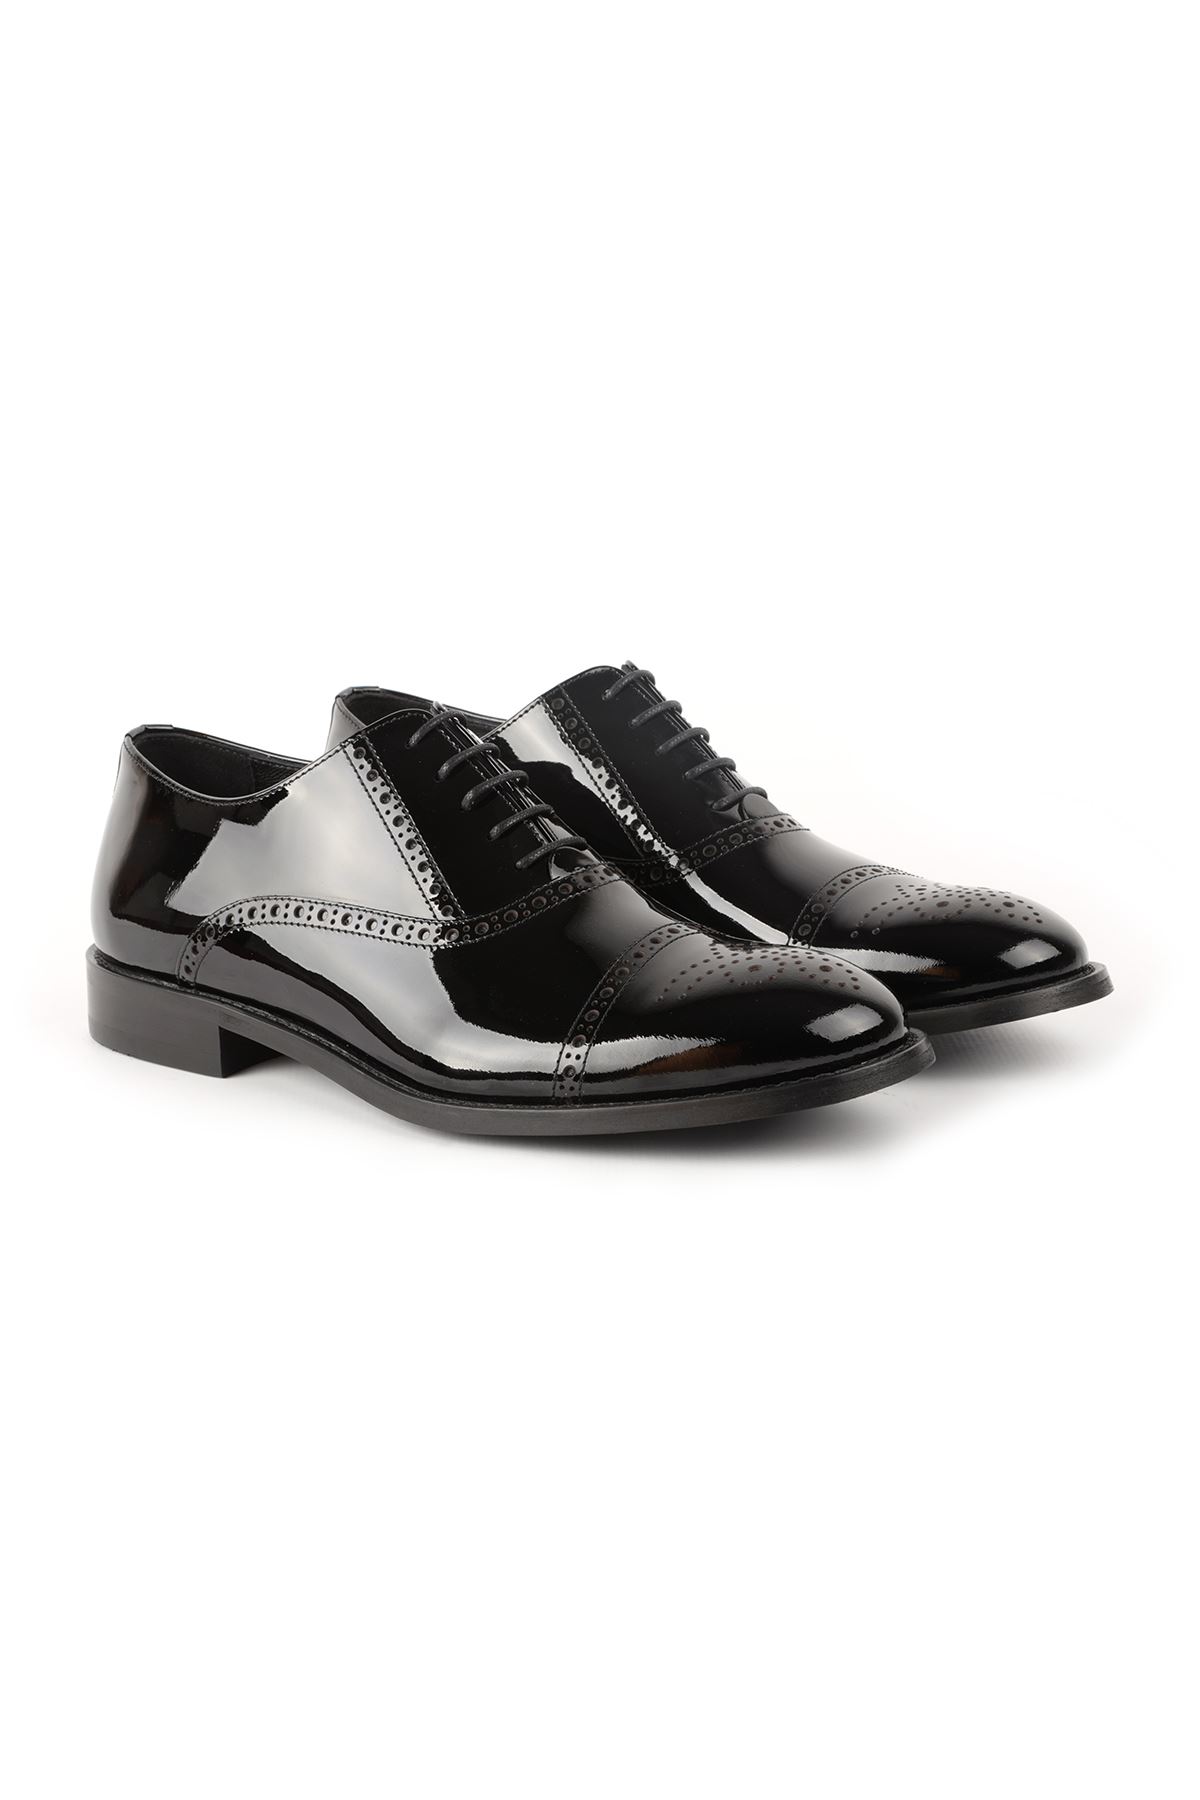 Libero L3698 Siyah Klasik Erkek Ayakkabı 